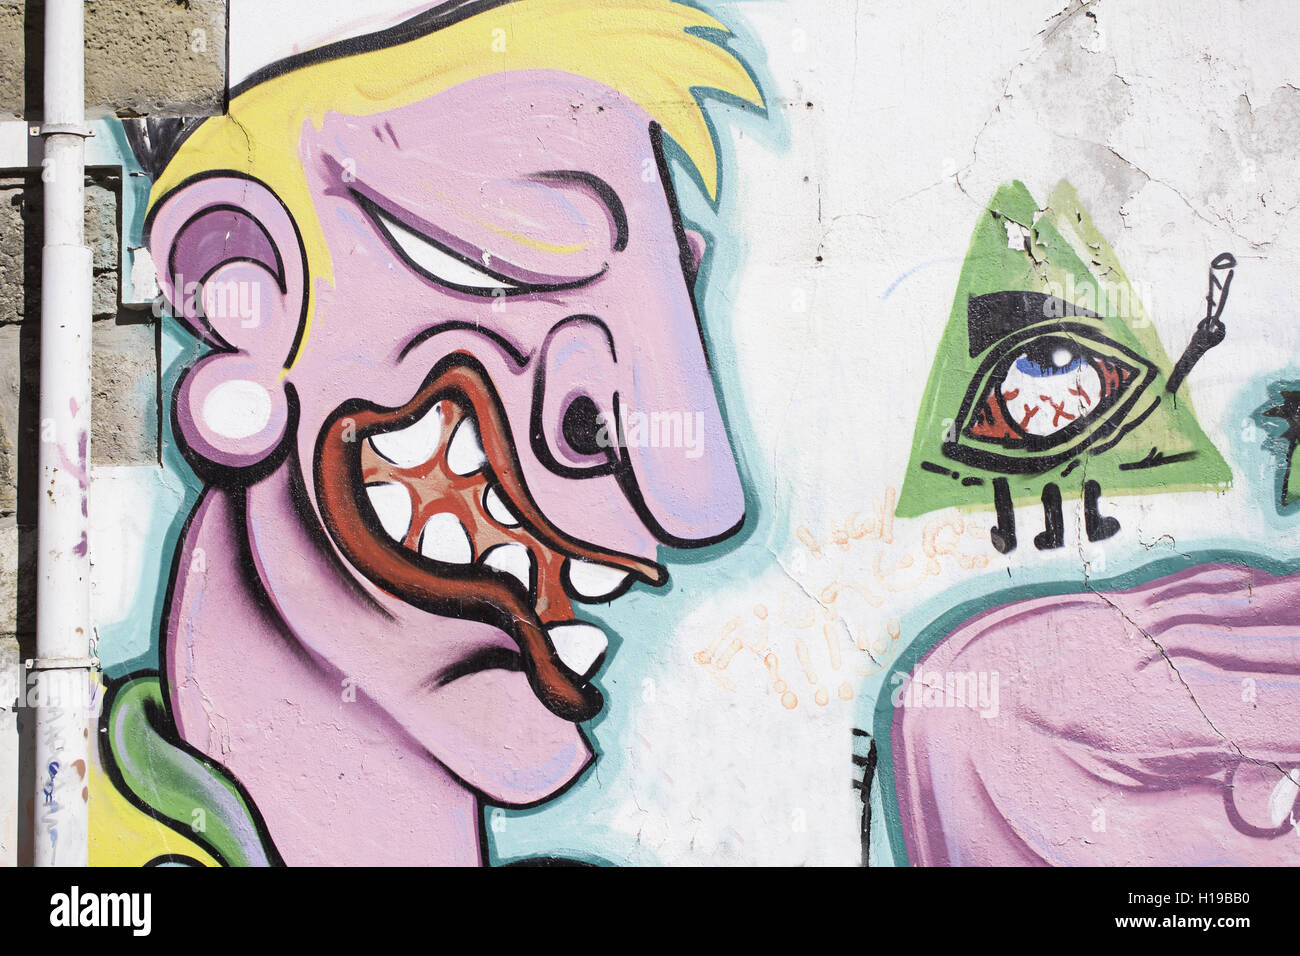 Strange man with eye wall, graffiti Stock Photo